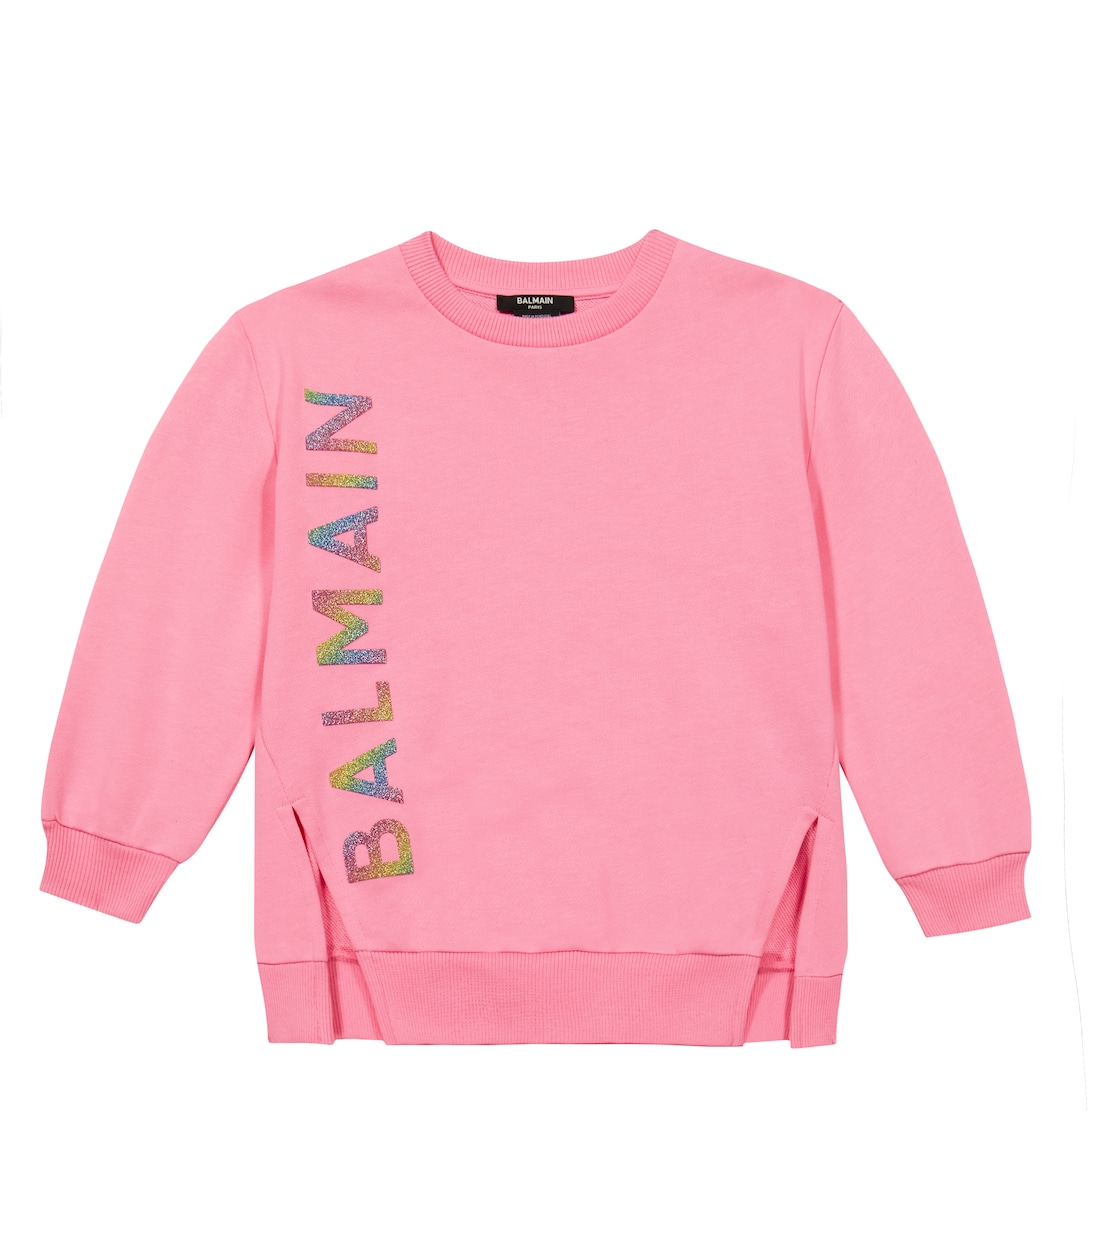 Толстовка из хлопка с логотипом Balmain, розовый платье толстовка из хлопка с логотипом balmain фиолетовый